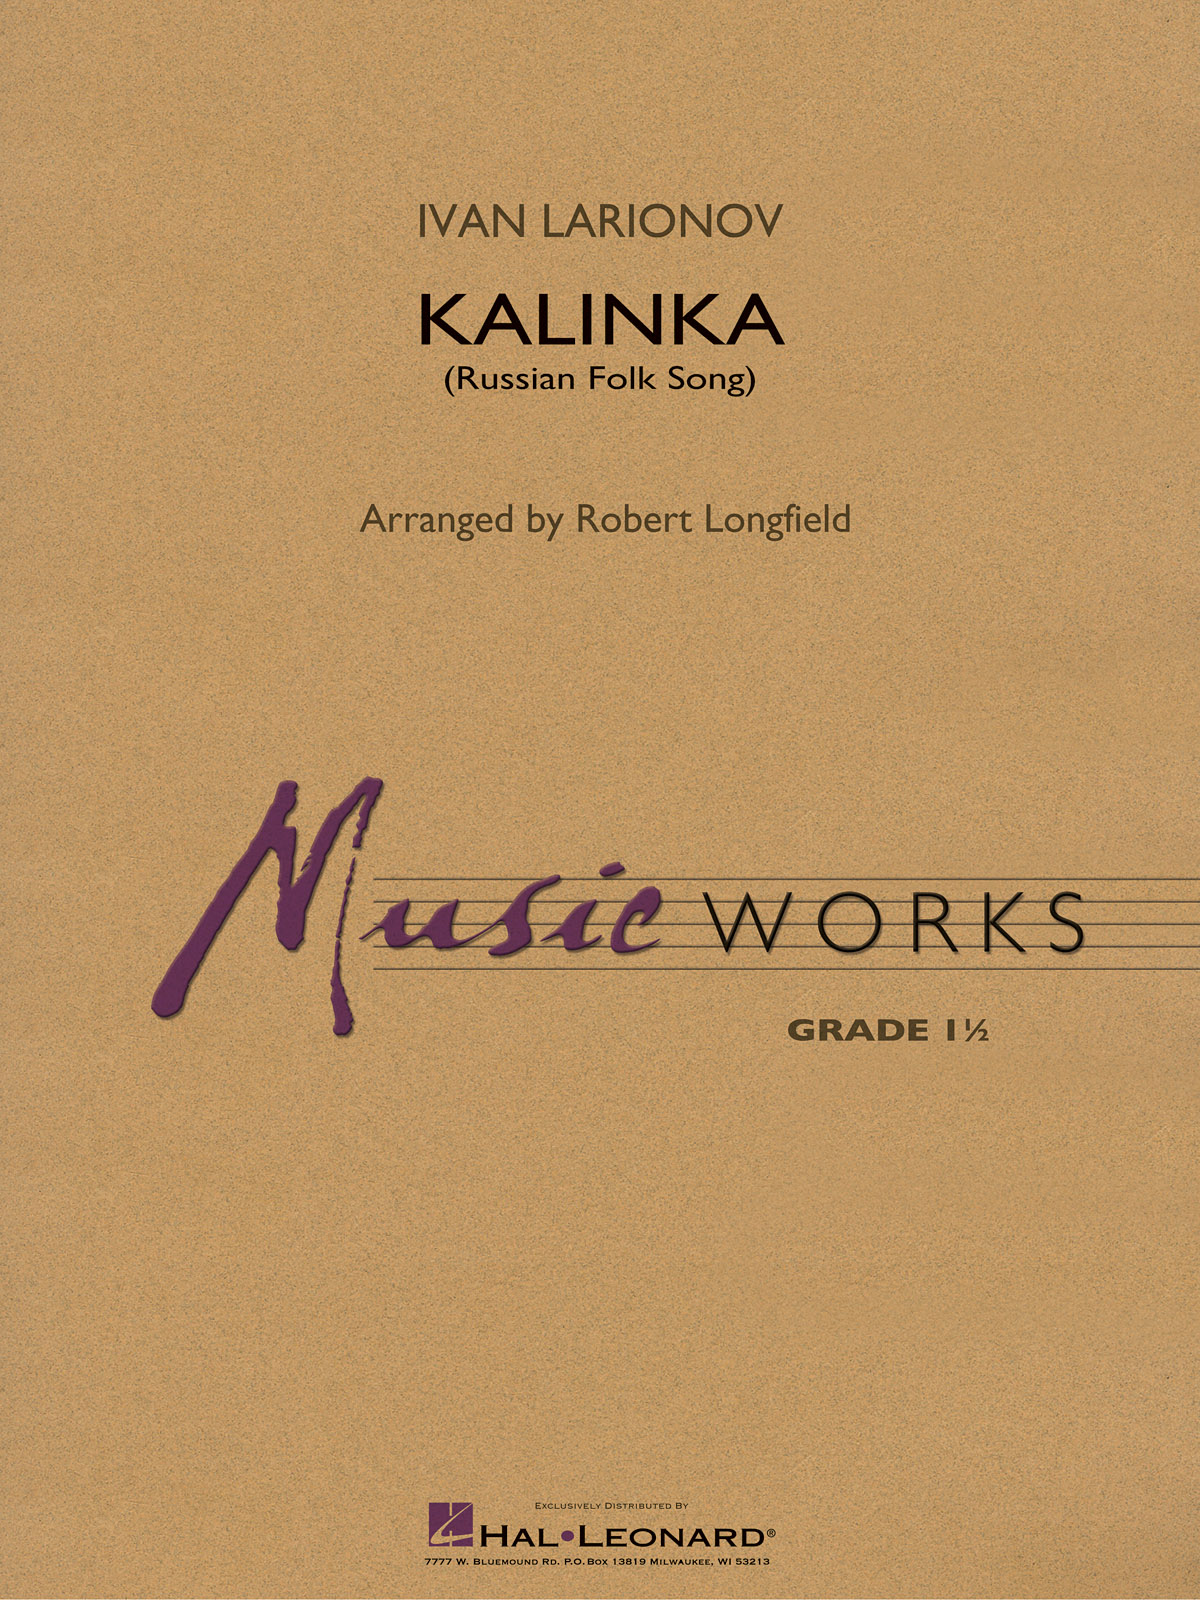 Ivan Larionov: Kalinka (Russian Folk Song)